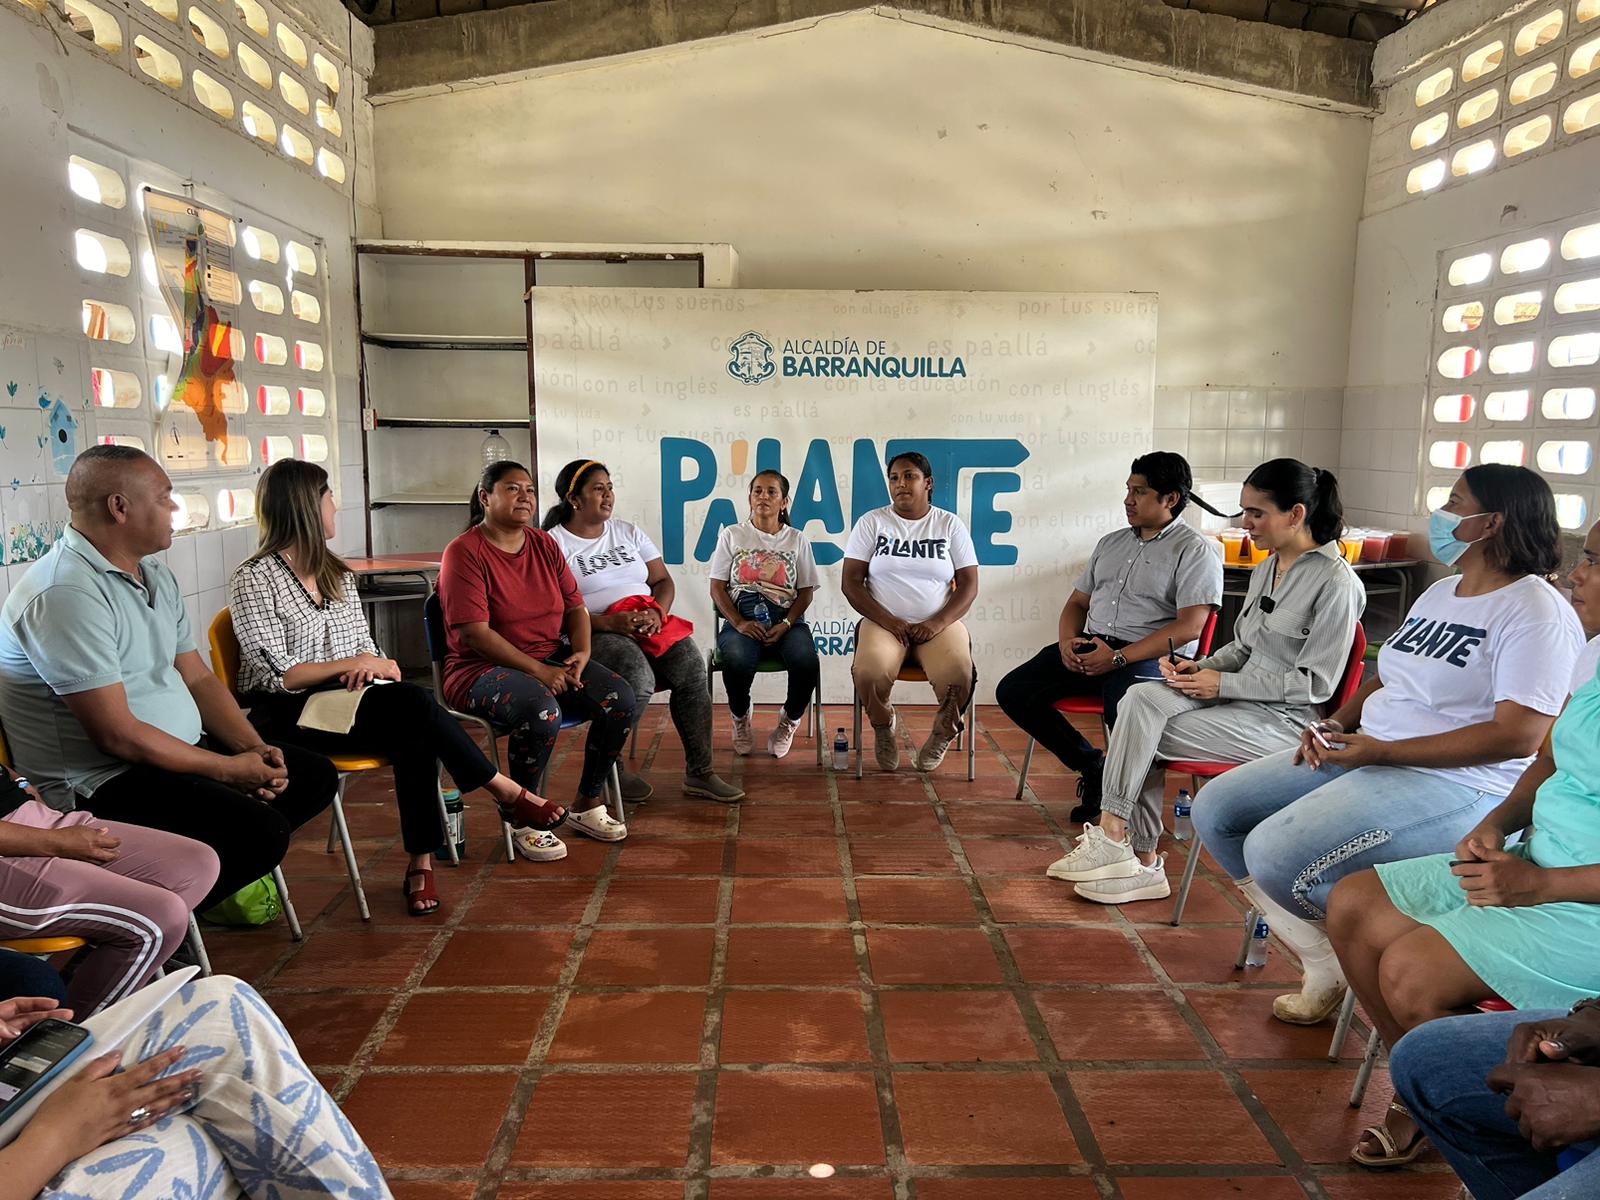 Beneficiarios de ‘Barranquilla va pa' lante’ en uno de los encuentros con la Alcaldía